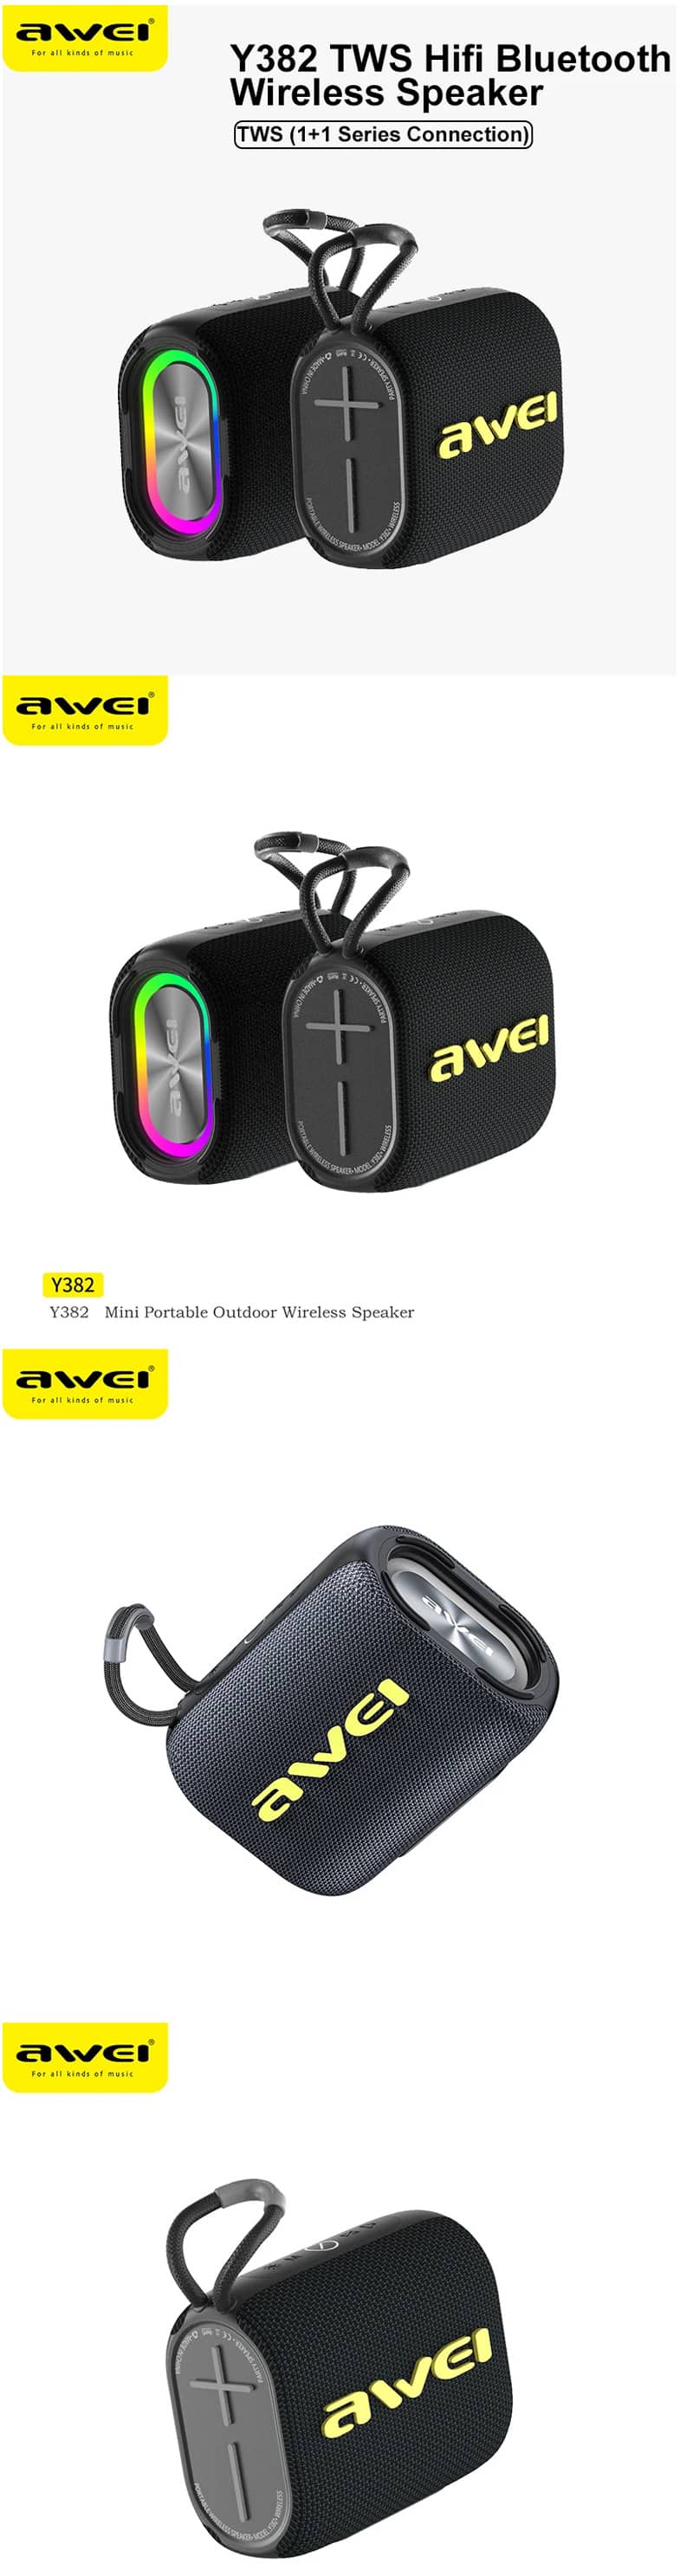 Awei Y382 TWS Wireless Bluetooth Speaker